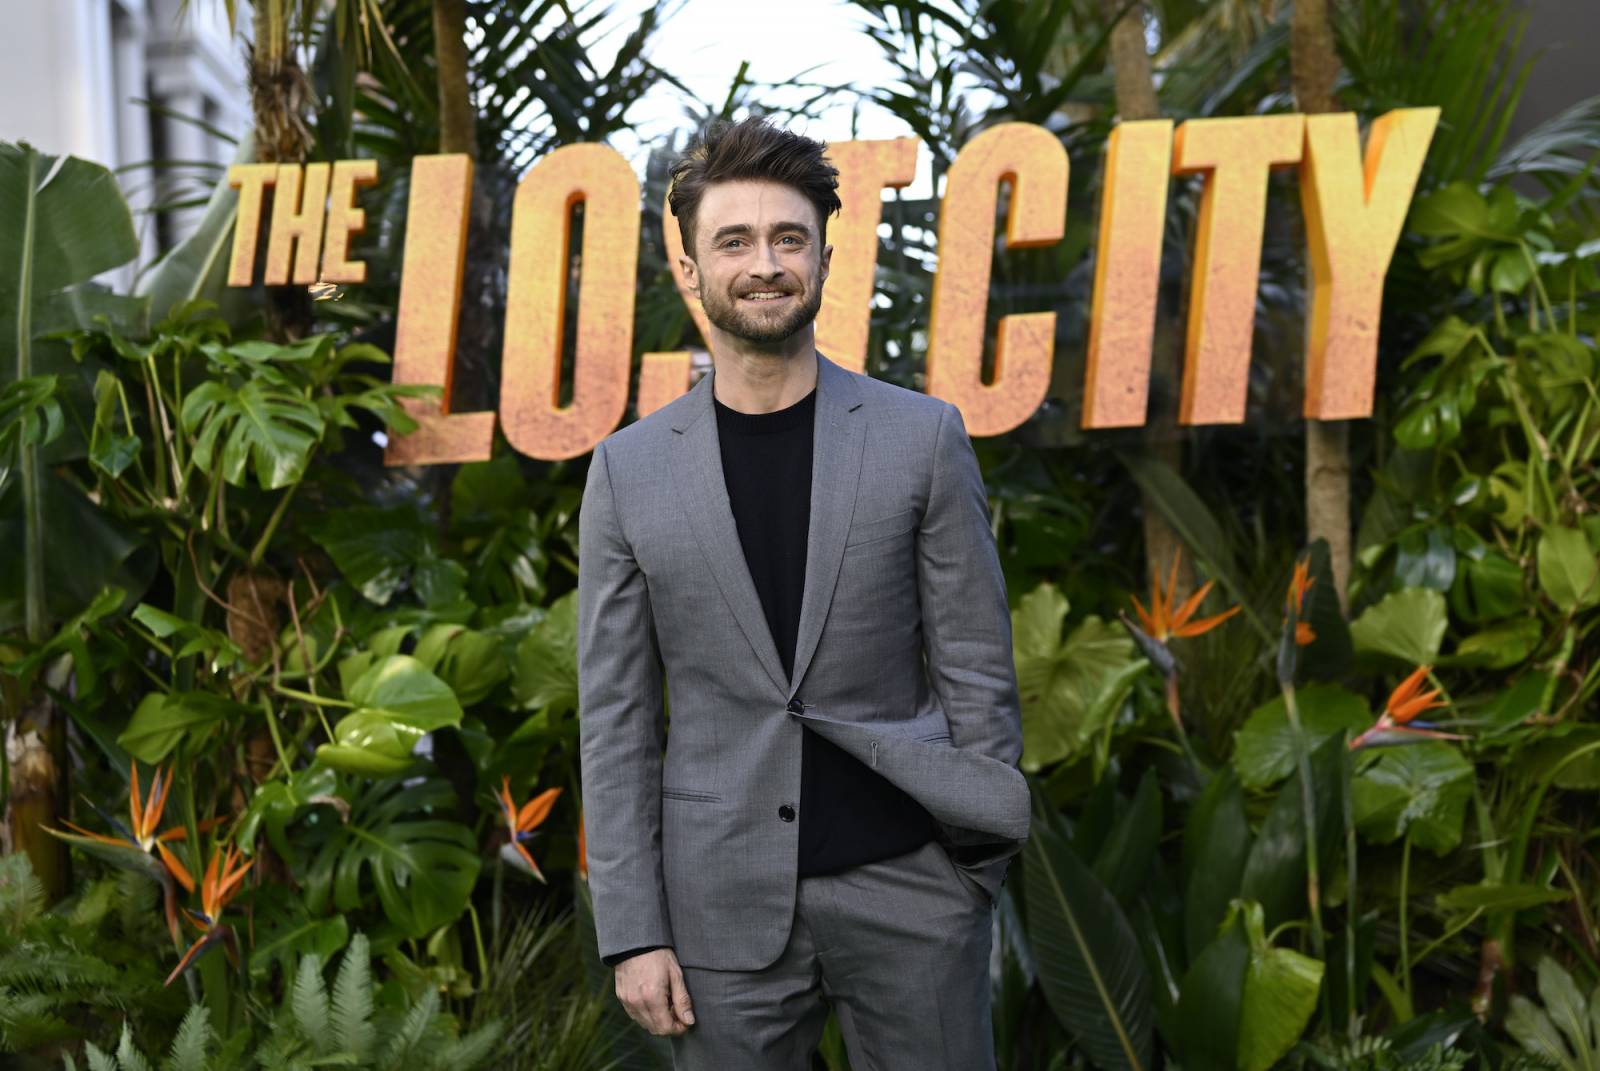 Aktor Daniel Radcliffe promuje właśnie nowy sezon swojego serialu „Cudotwórcy. W jednym z wywiadów odtwórca roli czarodzieja Harryego Pottera opowiedział o tacierzyństwie, pracy i przyszłości. (Fot. Getty Images)